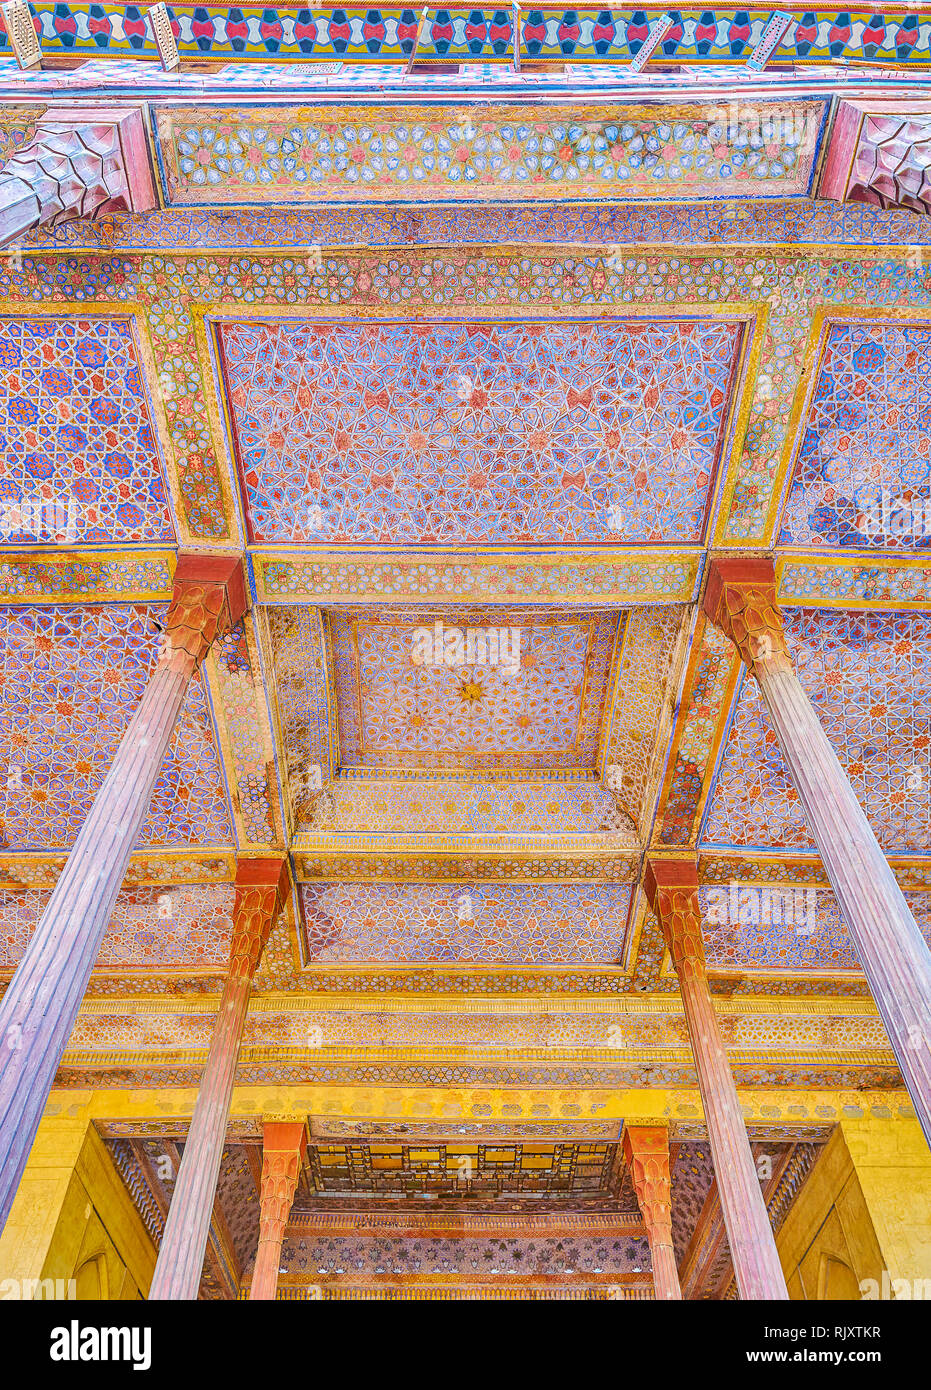 Les piliers en bois sculpté et peint de plafond galerie façade de Palais Chehel Sotoun rendre unique décoration de monument médiéval, Isfahan, Iran Banque D'Images